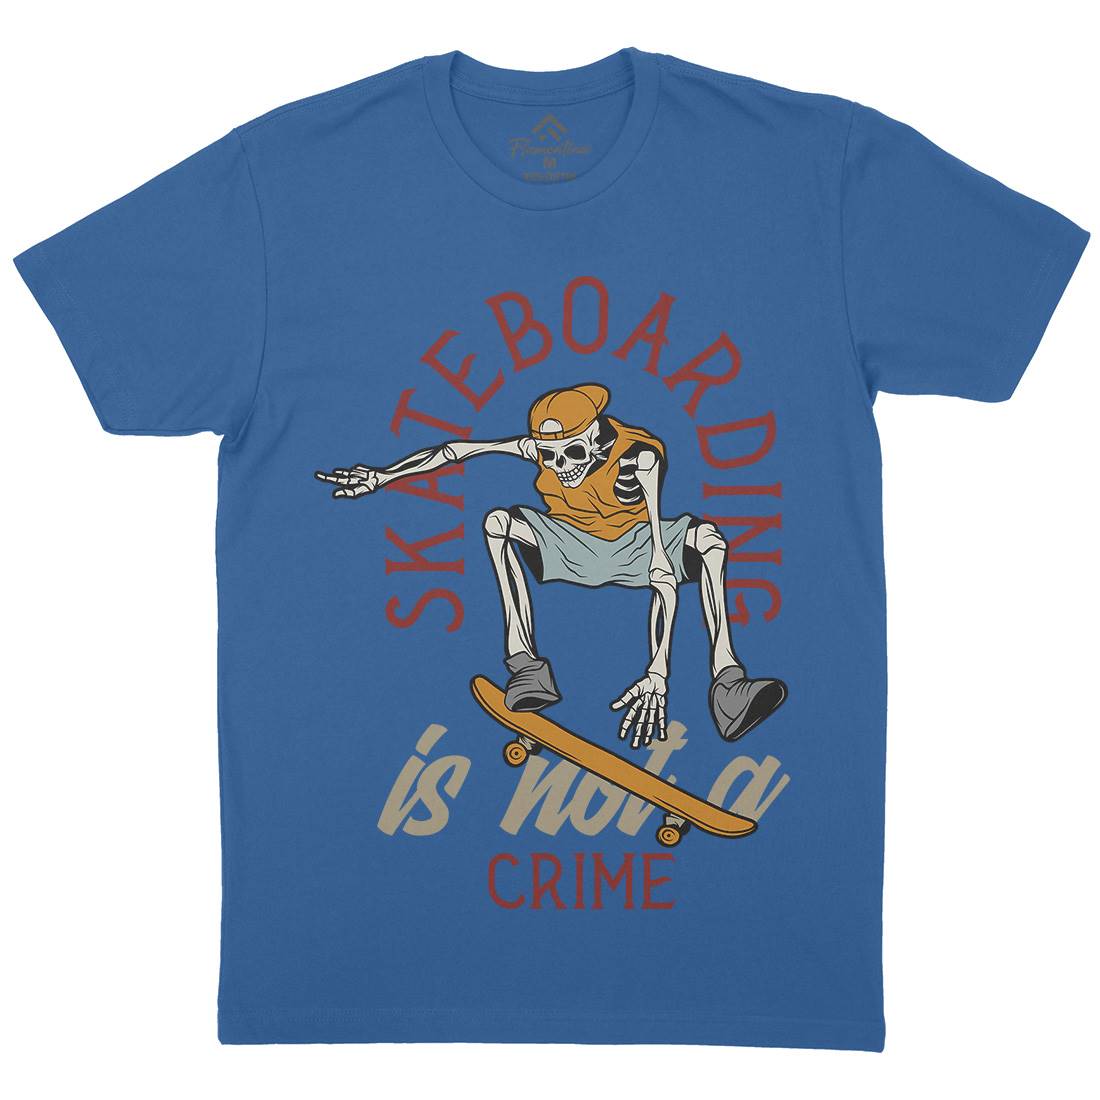 Skateboarding Crime Mens Crew Neck T-Shirt Skate D975